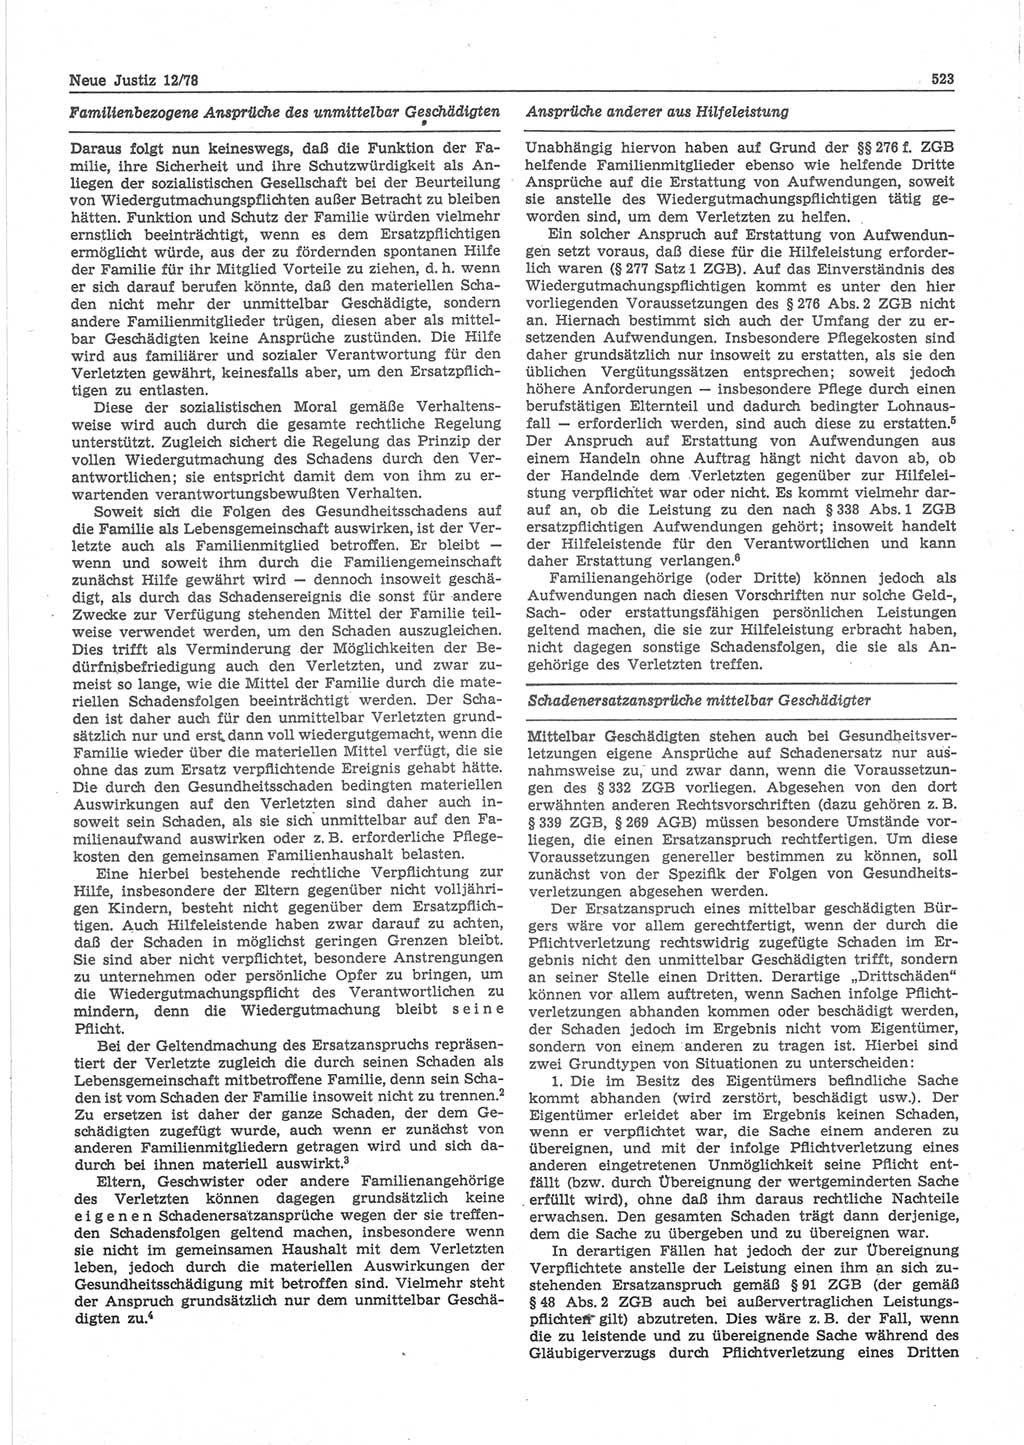 Neue Justiz (NJ), Zeitschrift für sozialistisches Recht und Gesetzlichkeit [Deutsche Demokratische Republik (DDR)], 32. Jahrgang 1978, Seite 523 (NJ DDR 1978, S. 523)